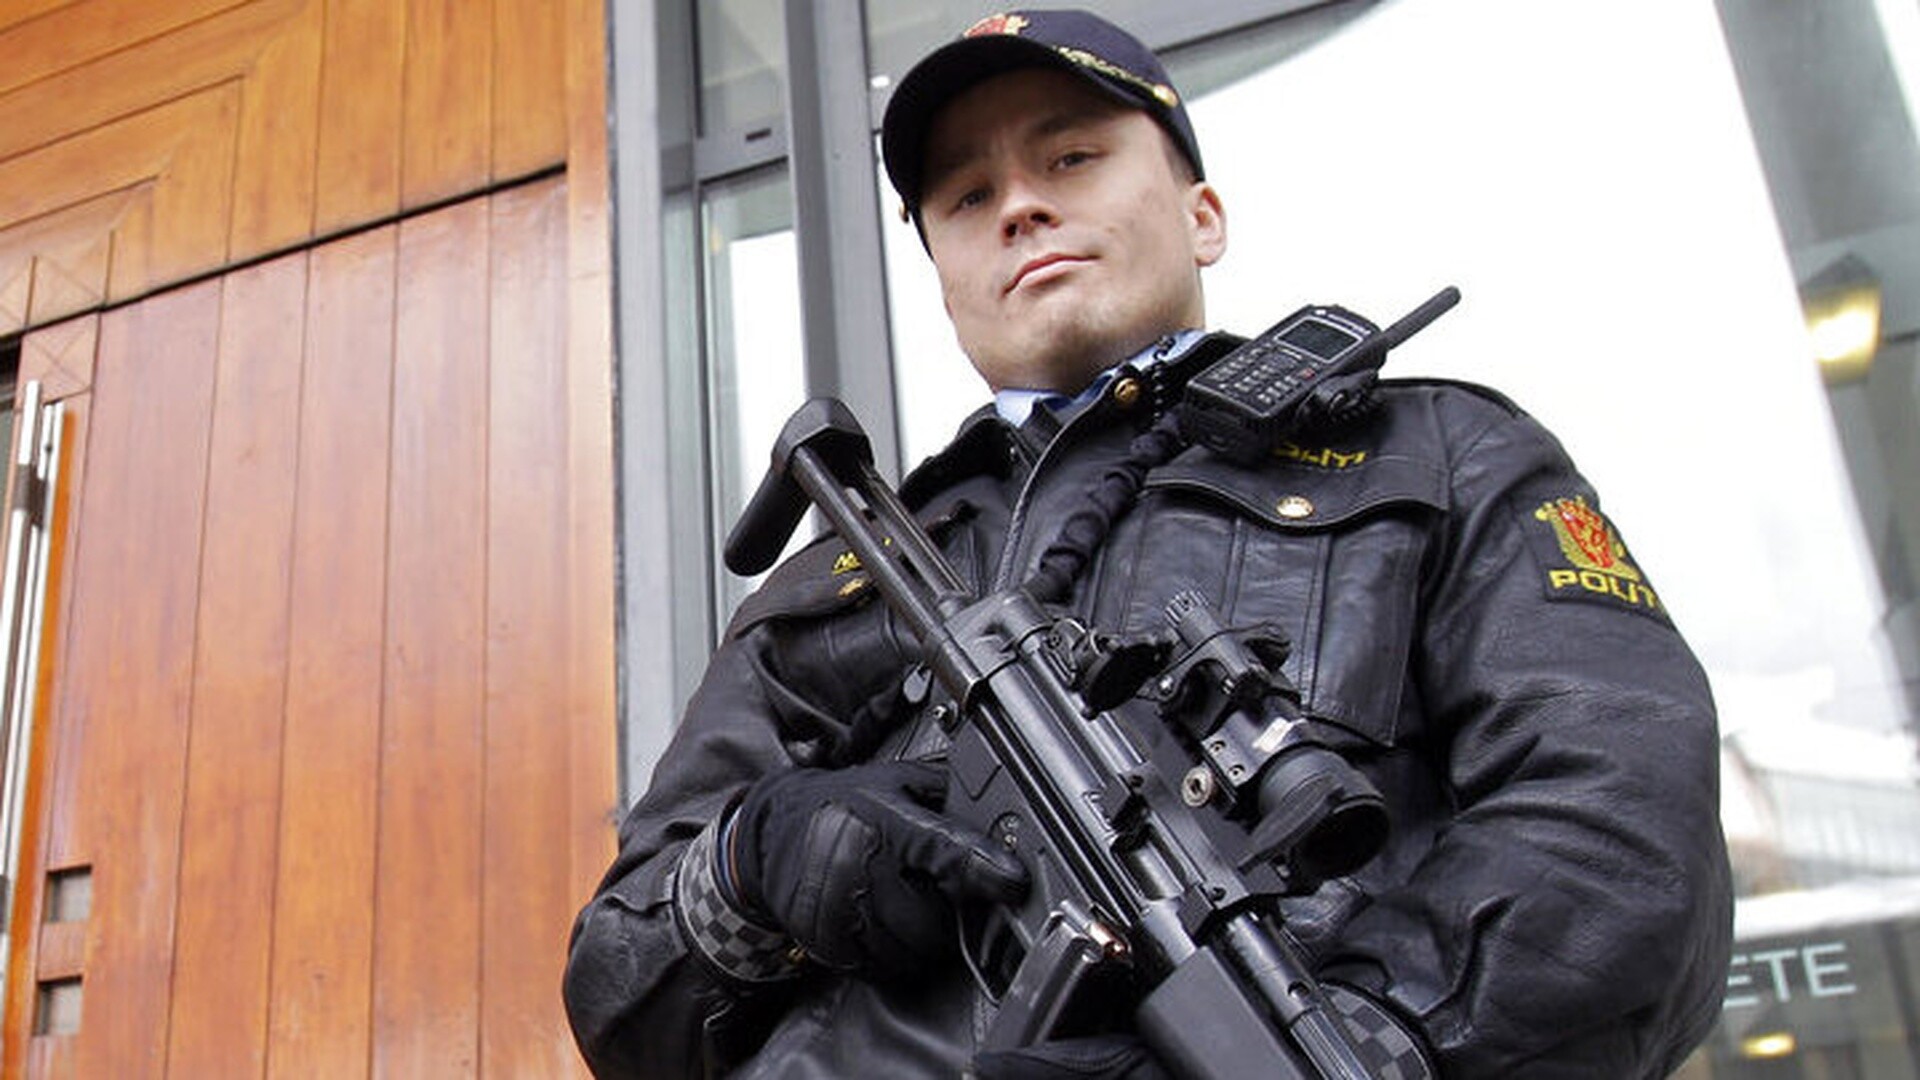 Νορβηγία: Οι αστυνομικοί θα φέρουν όπλα μέχρι νεωτέρας λόγω απειλής εναντίον τζαμιών